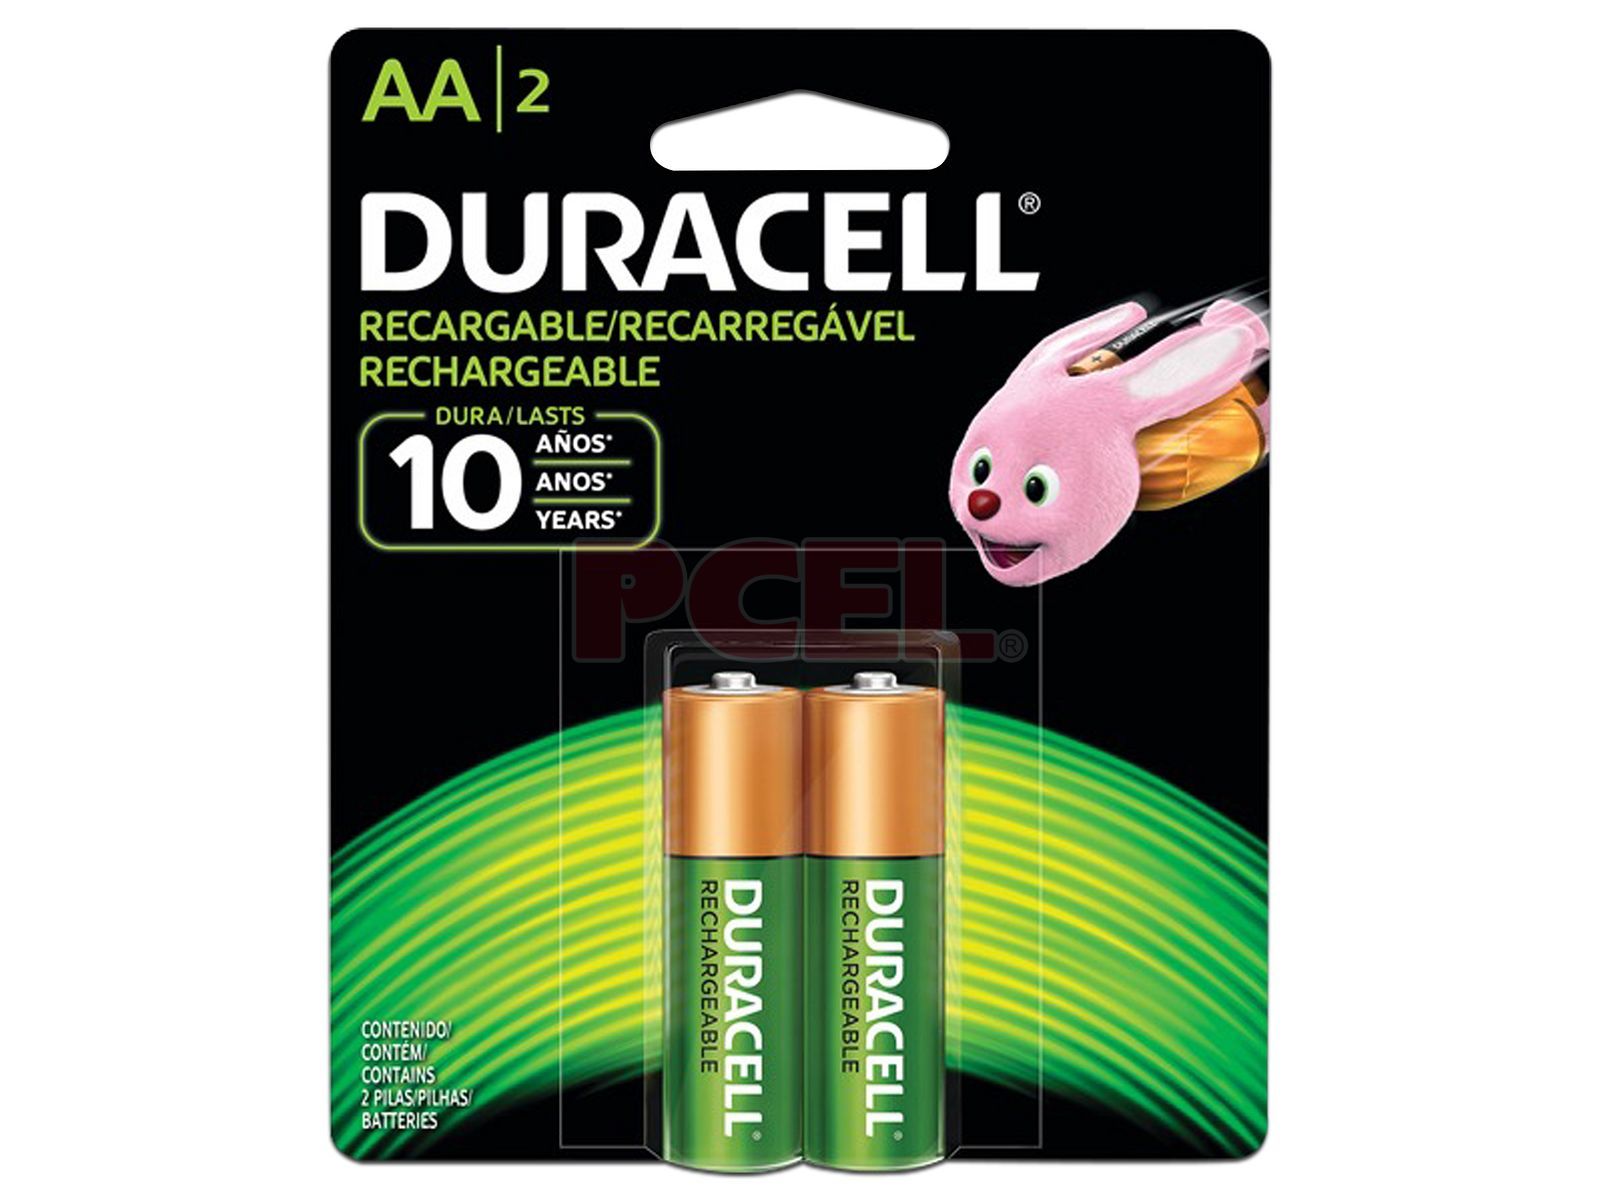 Duracell Baterías AAA recargables, paquete de 2 unidades, batería triple A  para una potencia duradera, batería precargada multiusos para dispositivos